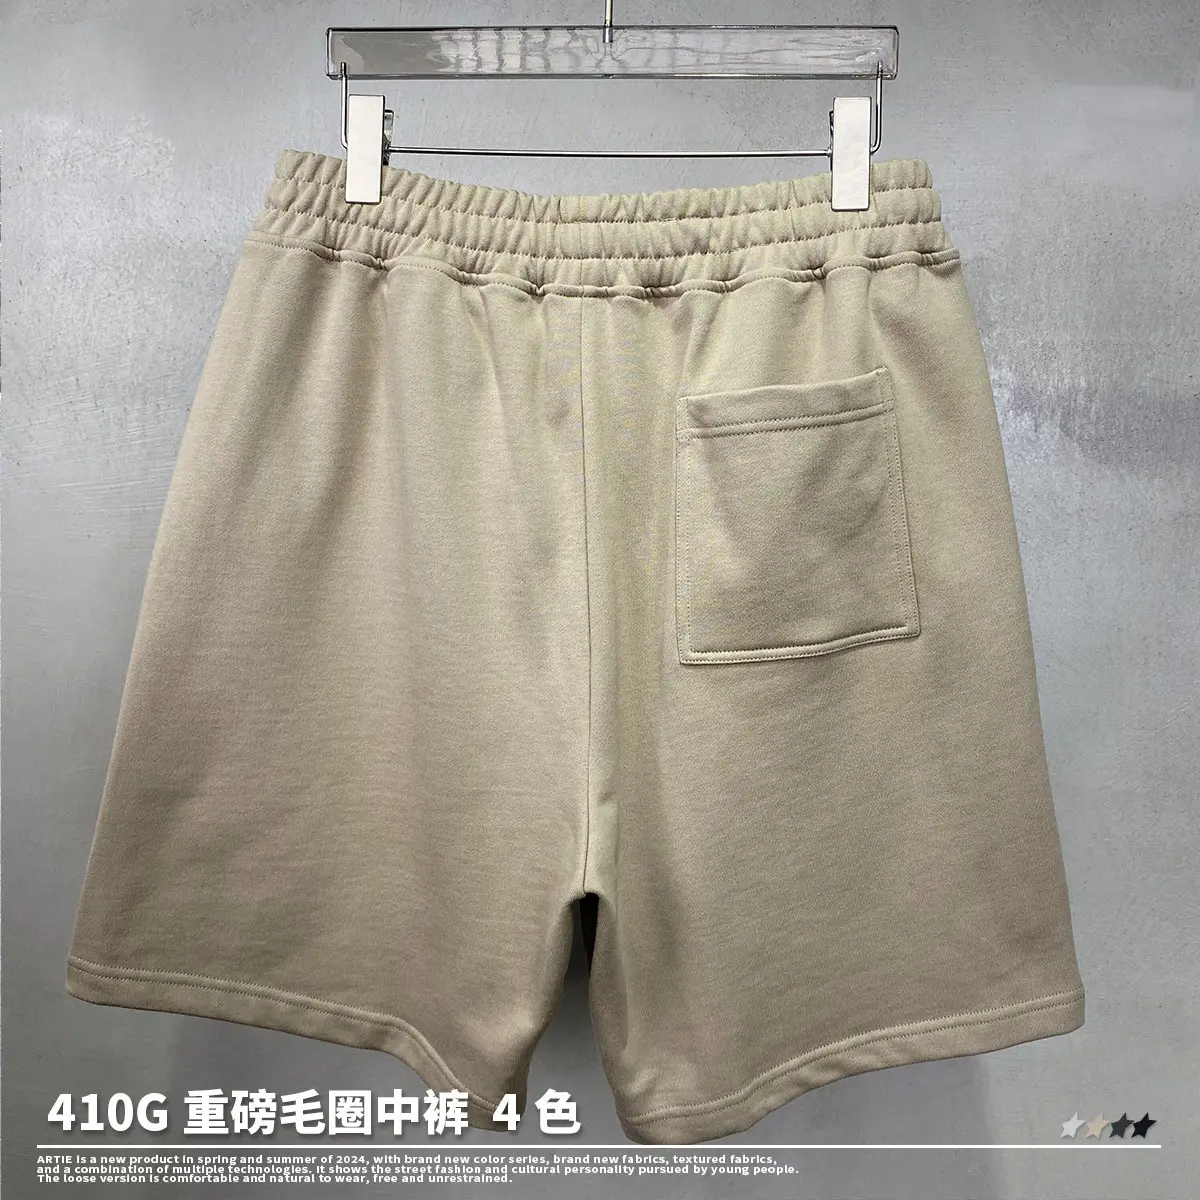 Heavyweight mùa hè quần short người đàn ông pháp terry cotton quần short cho nam giới quần áo bán buôn thiết kế mồ hôi Quần Short đường phố mặc